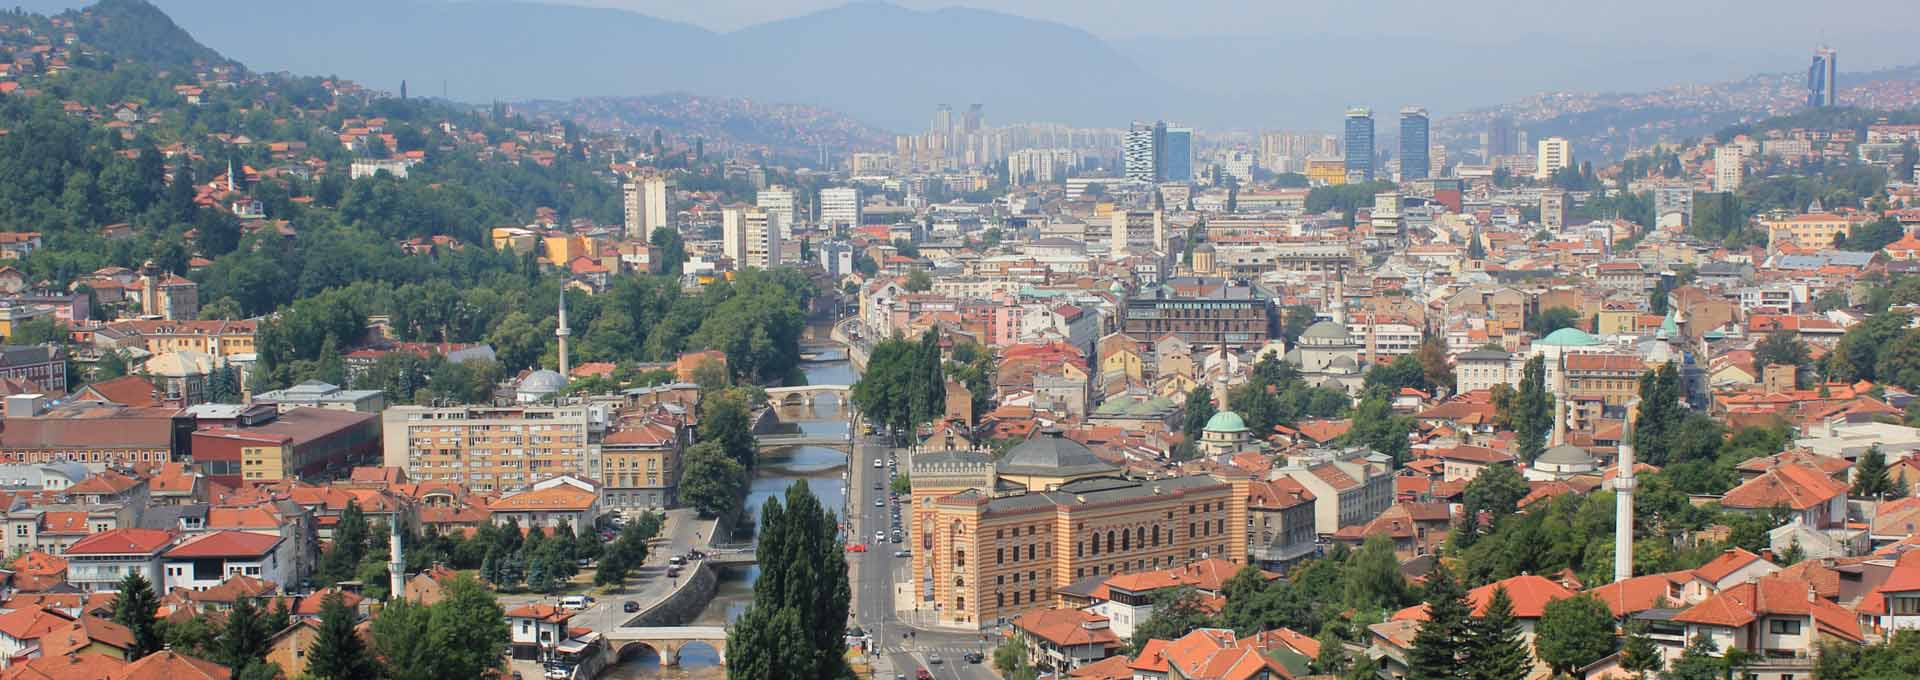 Kombi prevoz putnika do Sarajeva, brzo i povoljno